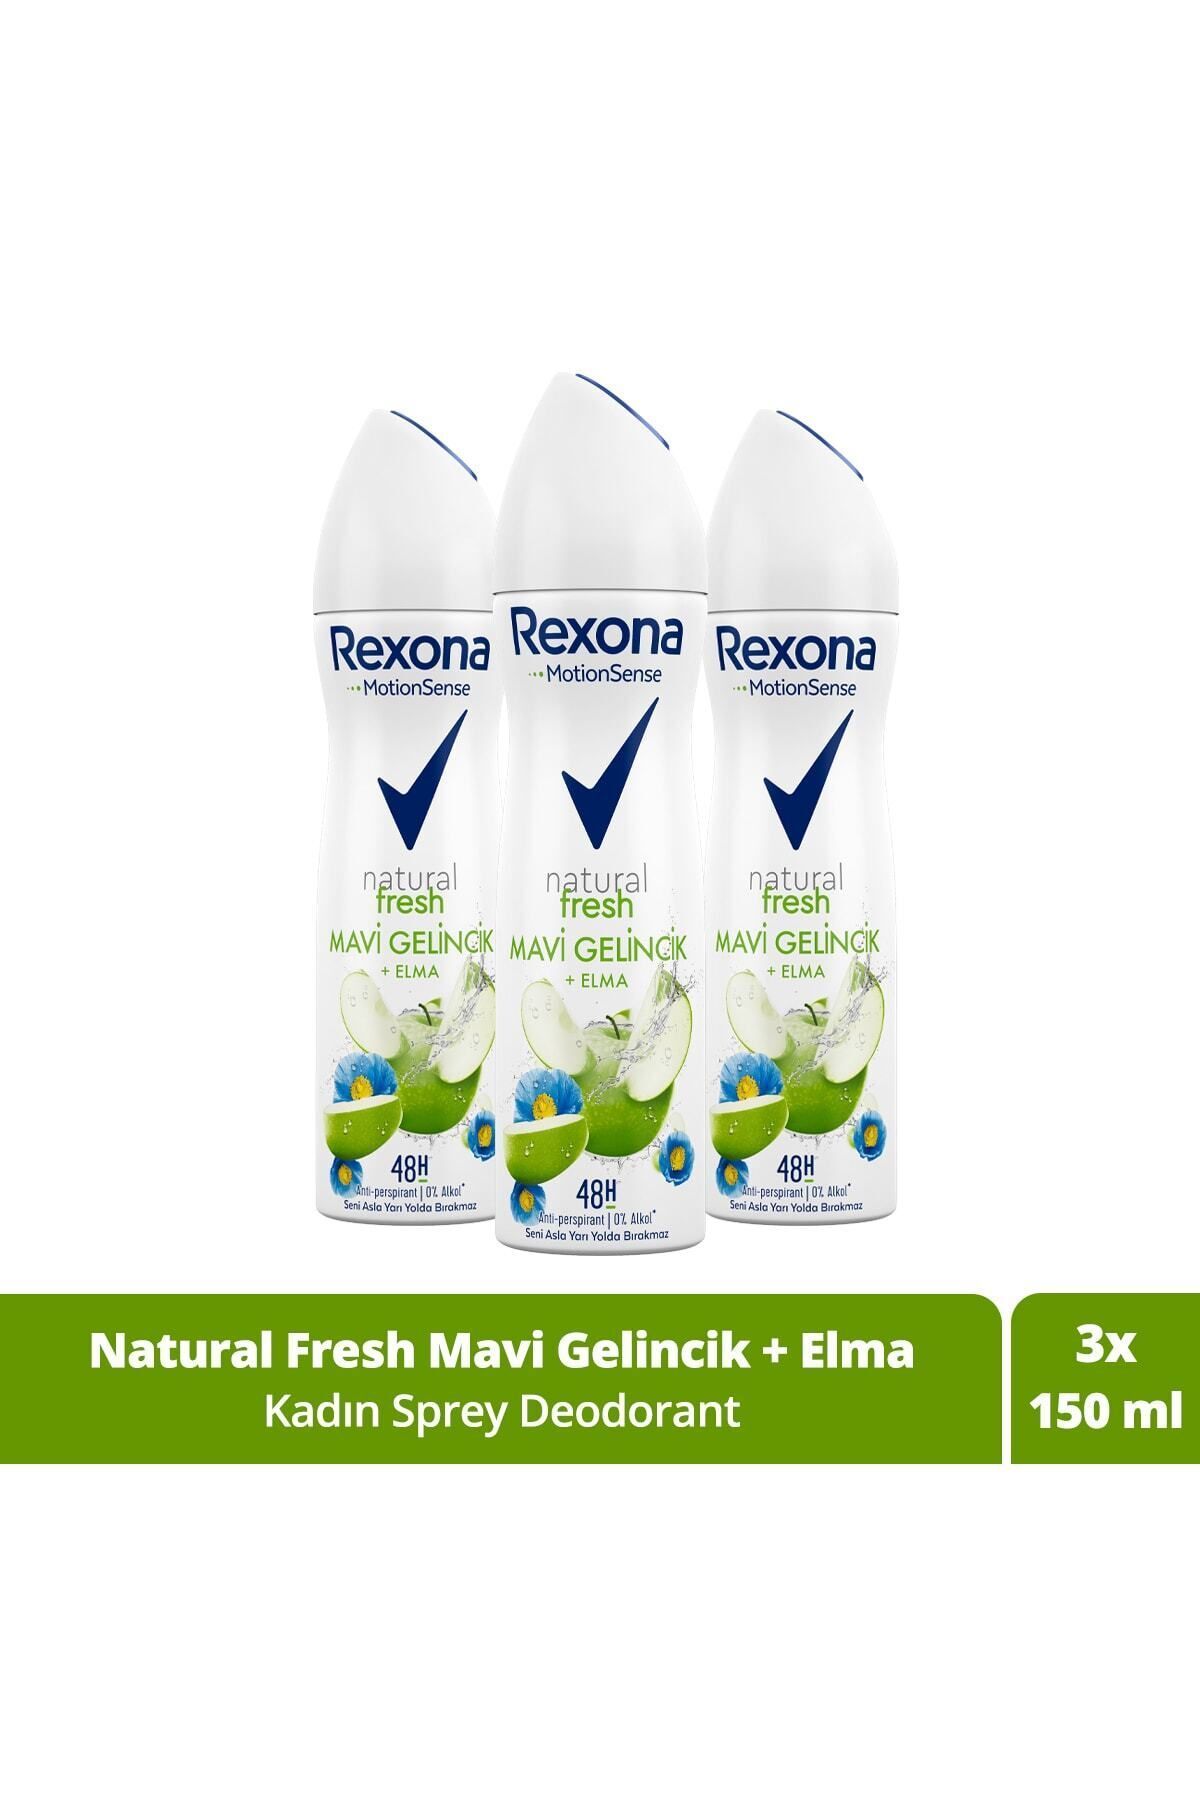 Rexona Kadın Sprey Deodorant Natural Fresh Mavi Gelincik Elma 150 ml X3